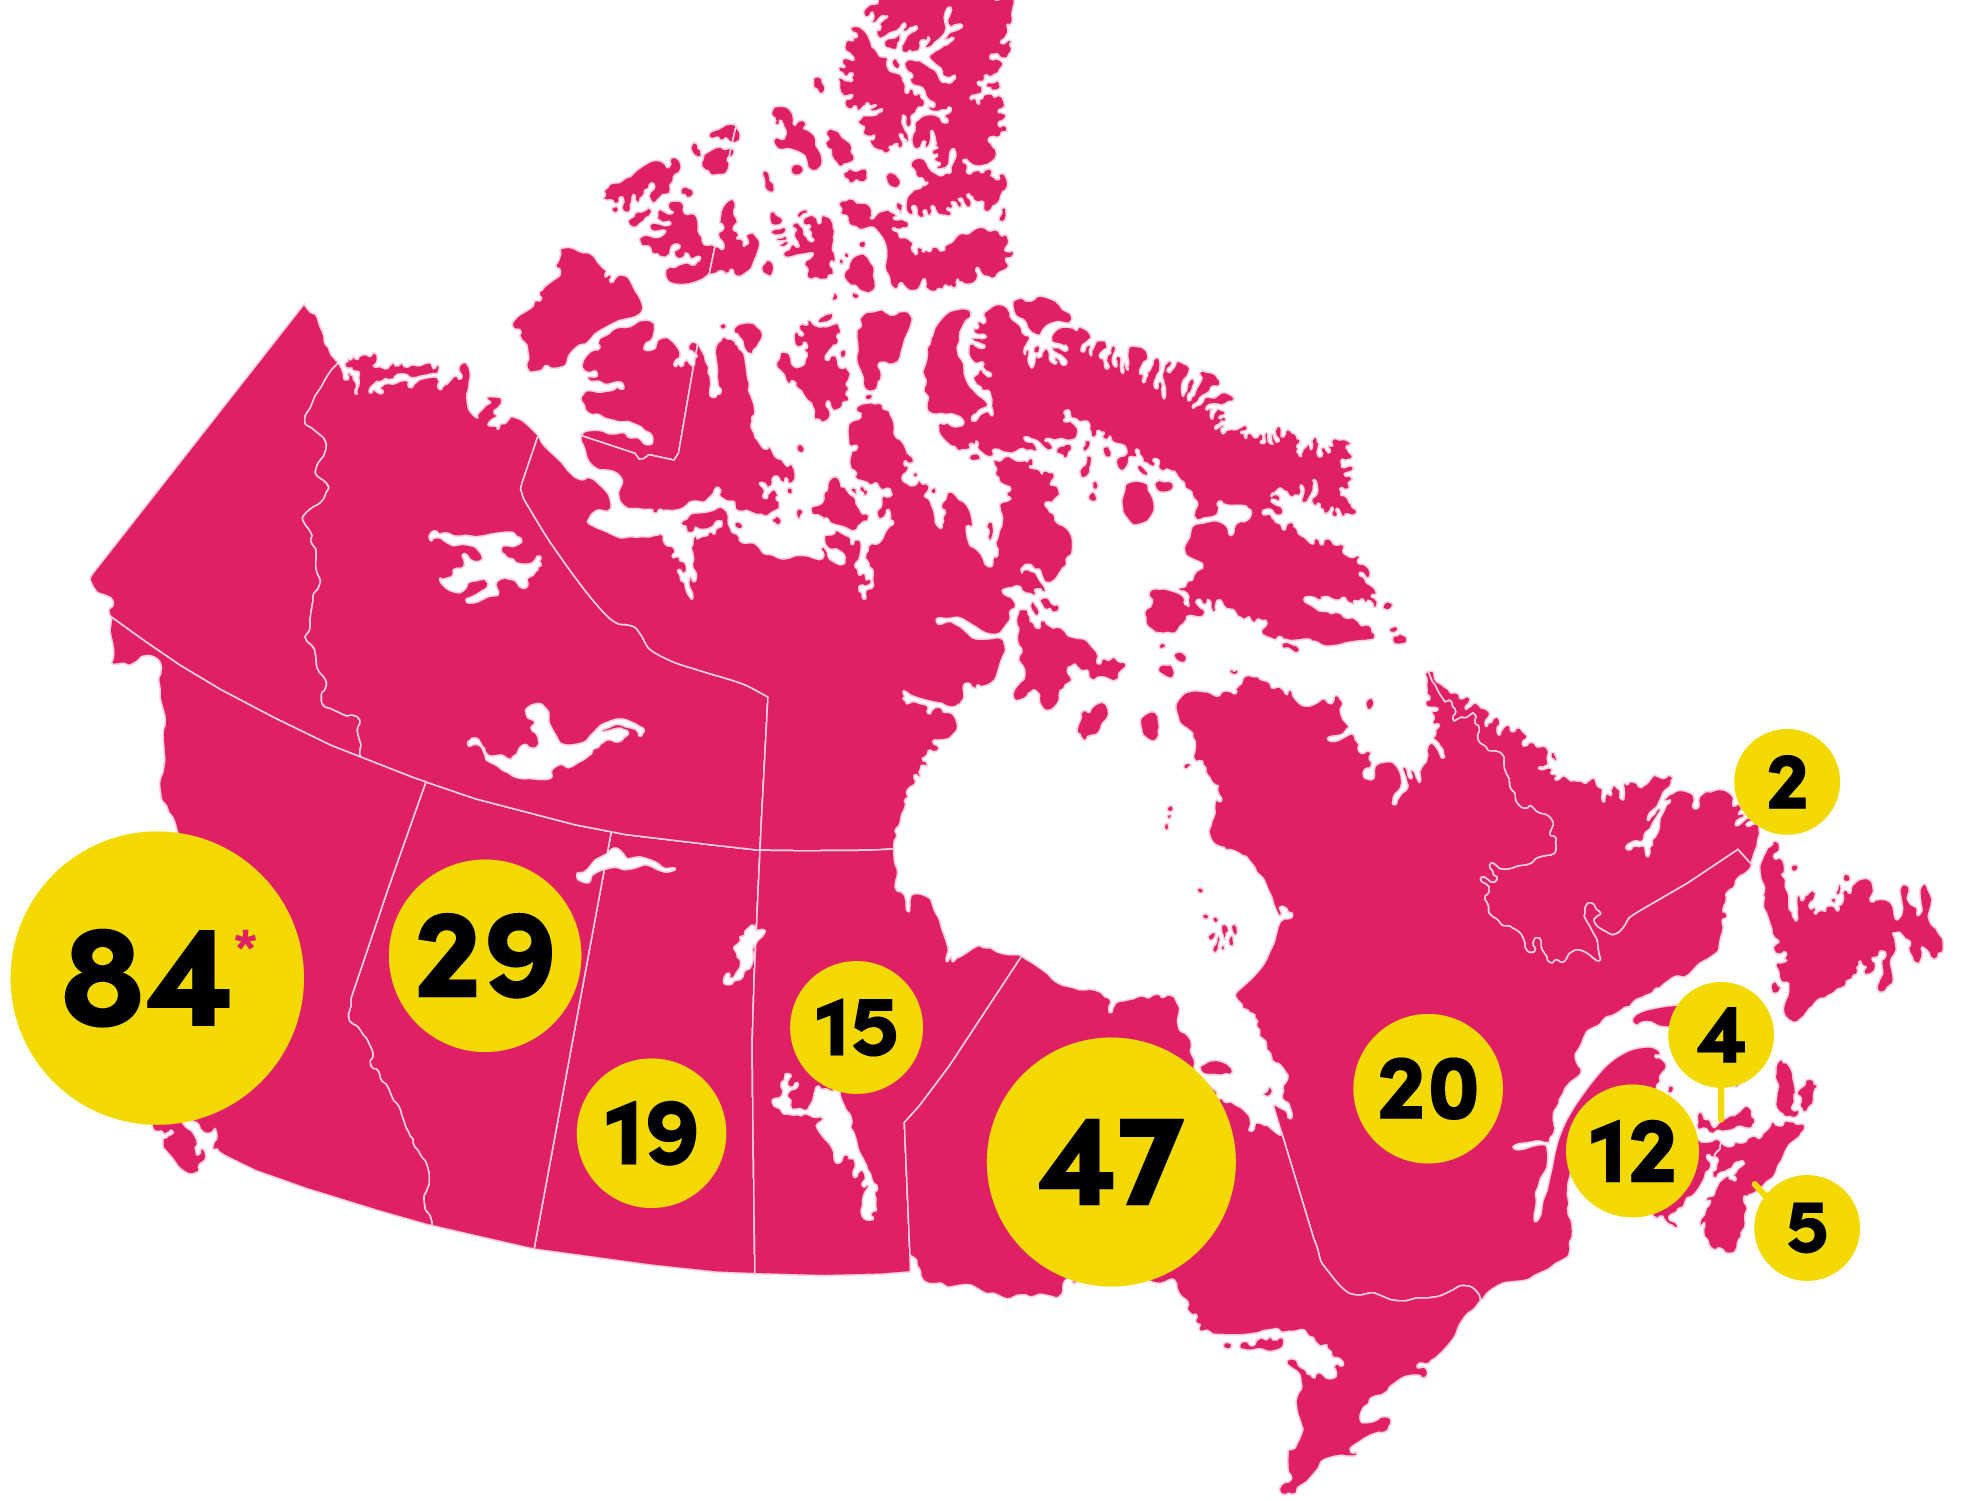 Carte du Canada montrant 84 établissements participants en Colombie-Britannique, 29 en Alberta, 19 en Saskatchewan, 15 au Manitoba, 47 en Ontario, 20 au Québec, 12 au Nouveau-Brunswick, 4 à l’Île-du-Prince-Édouard, 5 en Nouvelle-Écosse et 2 à Terre-Neuve-et-Labrador.